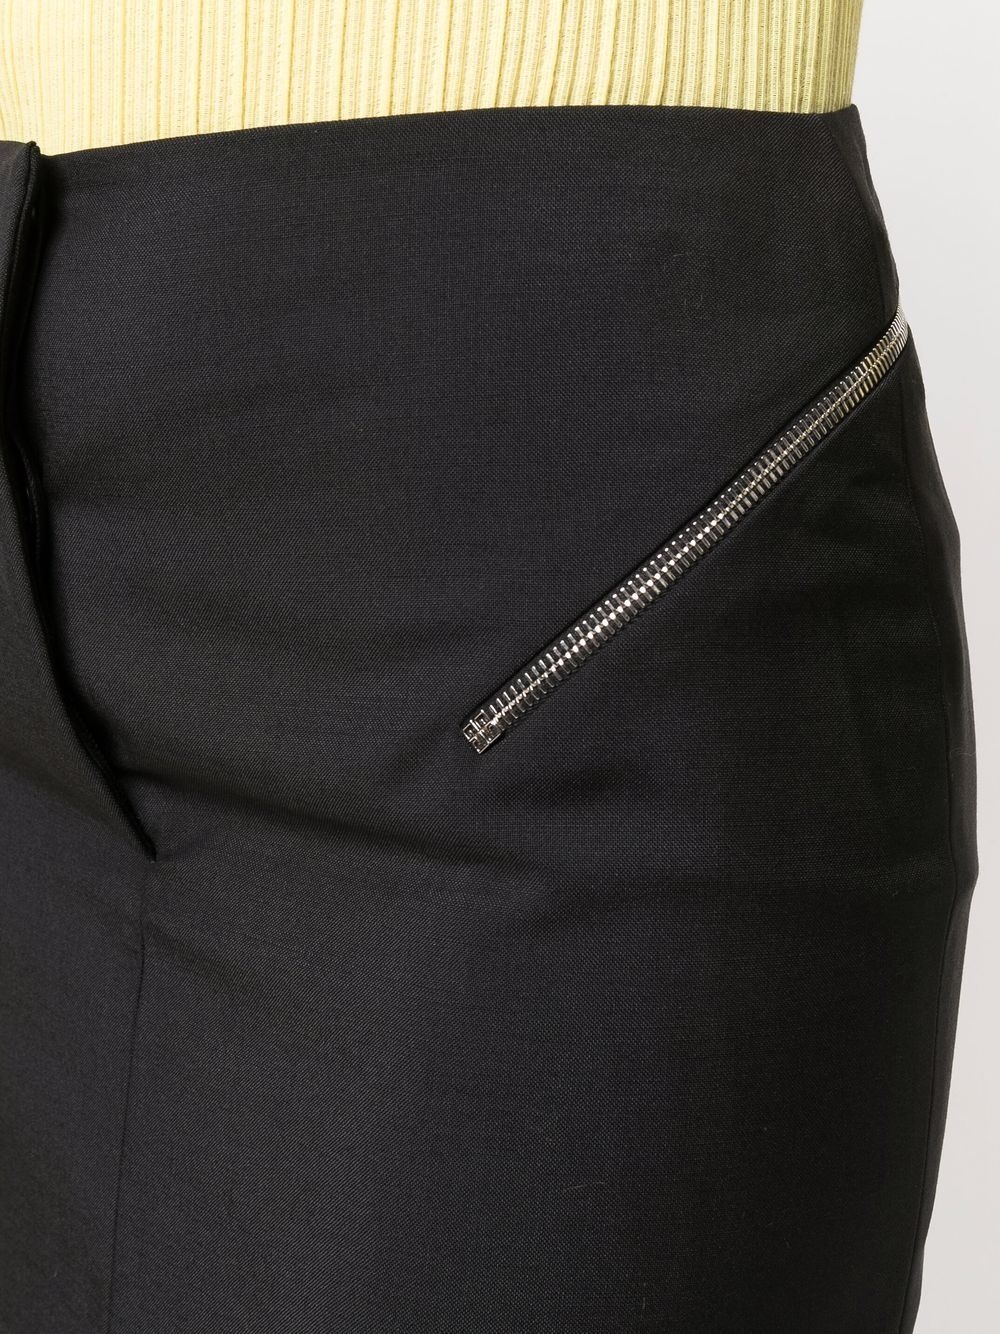 zip-embellished pencil skirt - 5